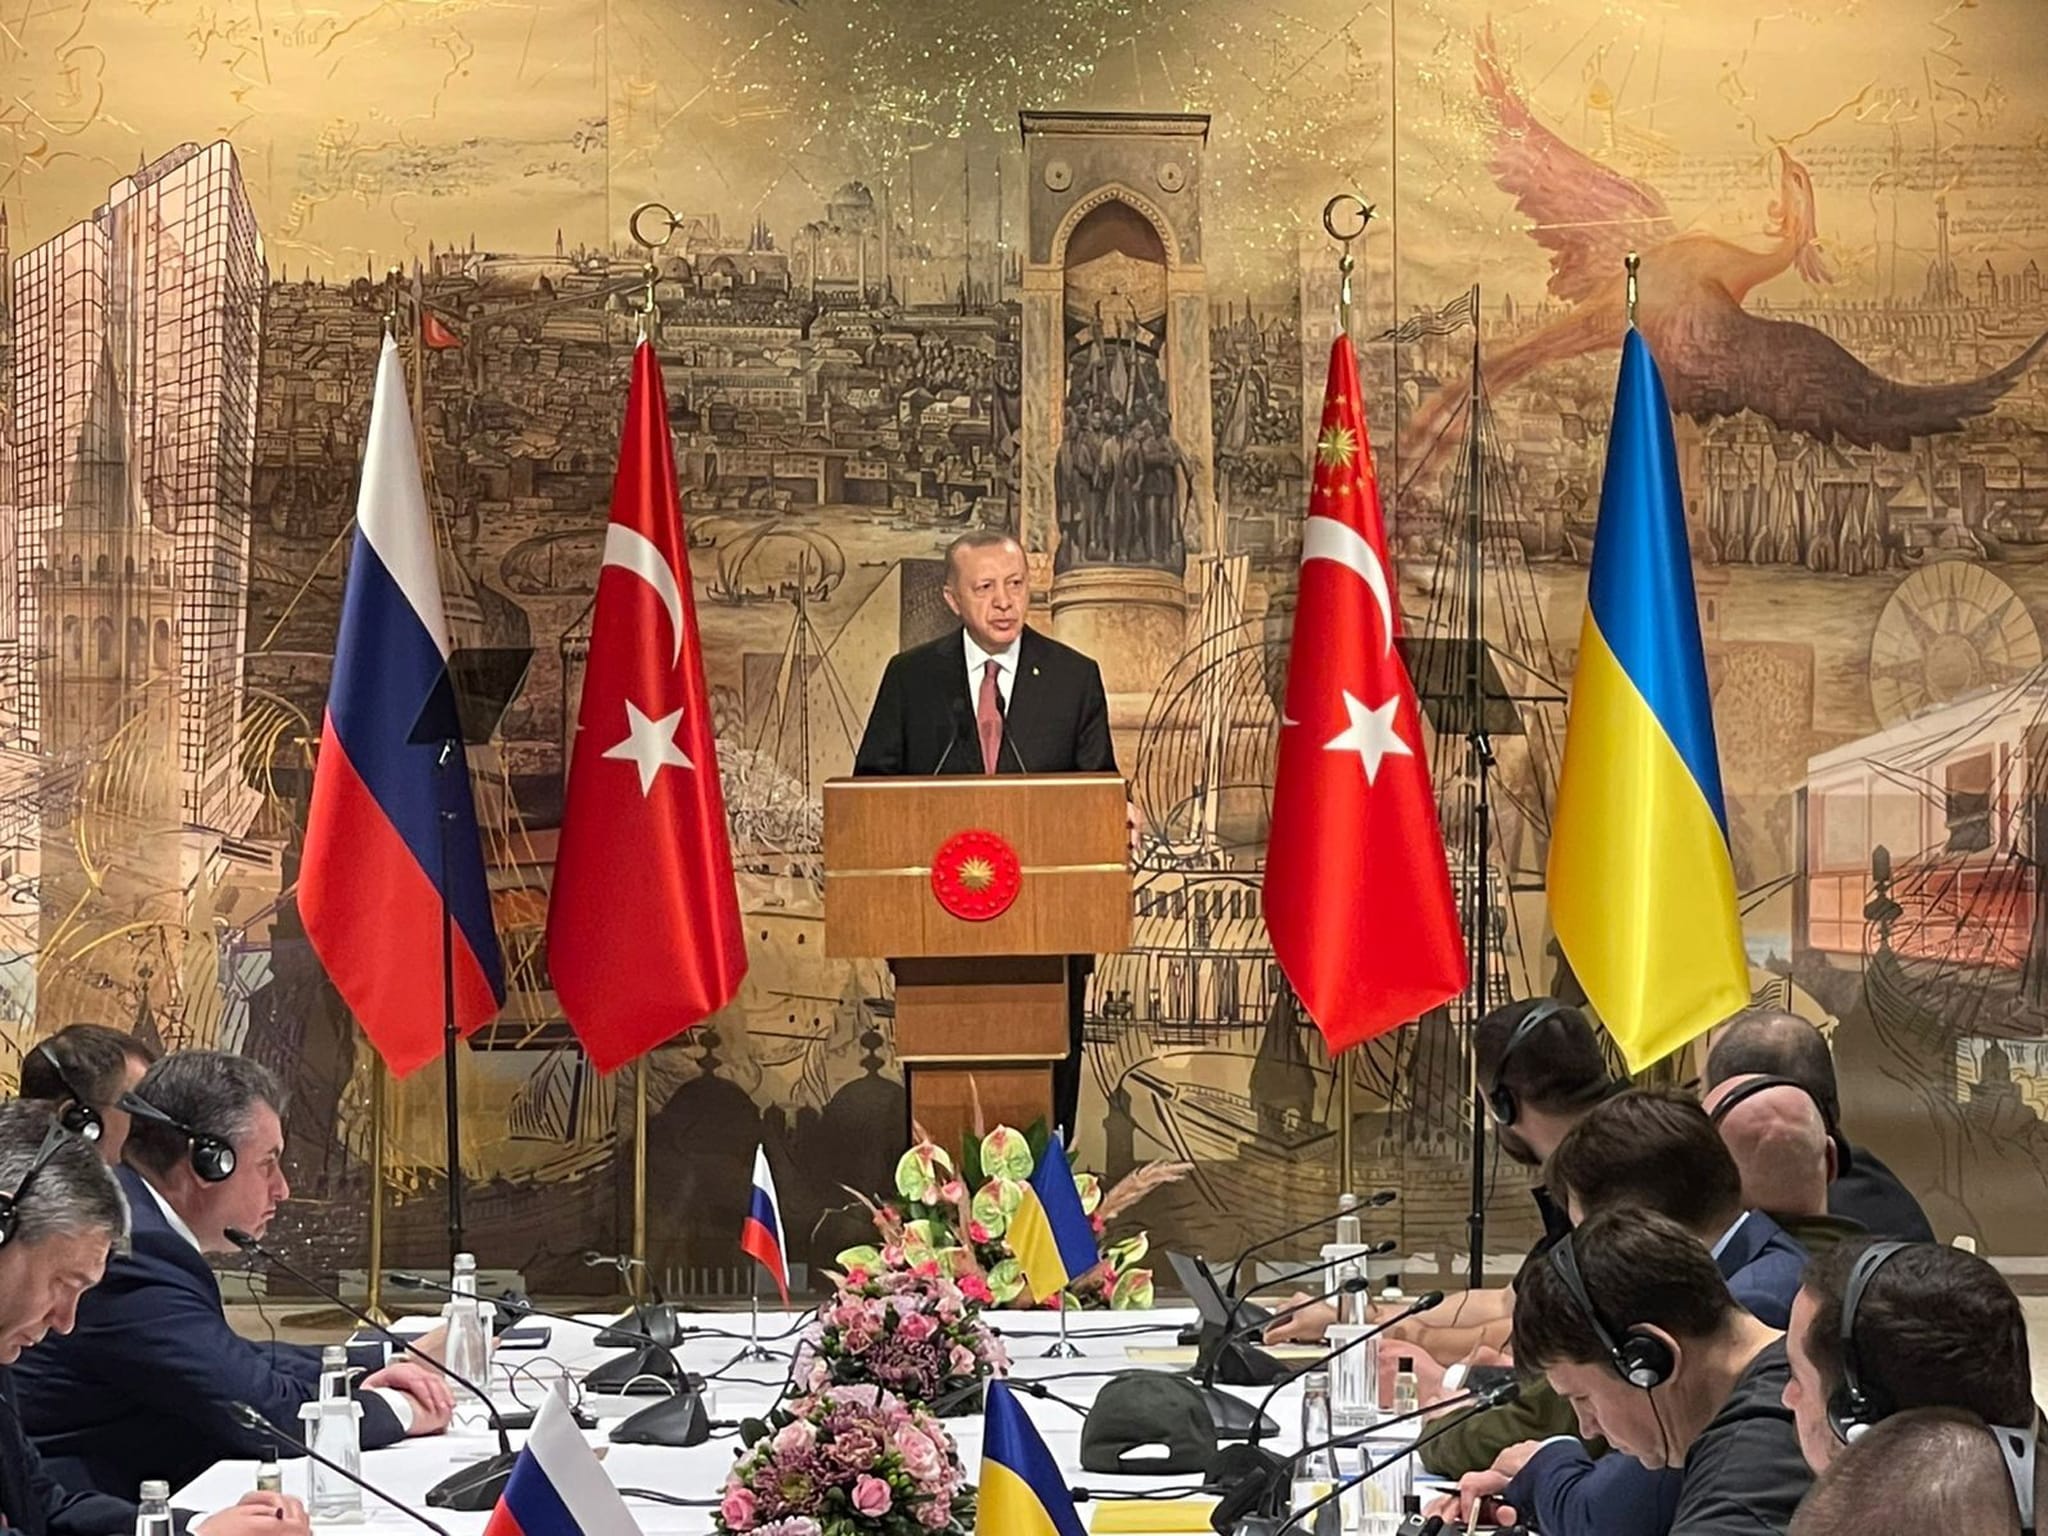 Erdogan preside las negociaciones entre rusos y ucranianos.